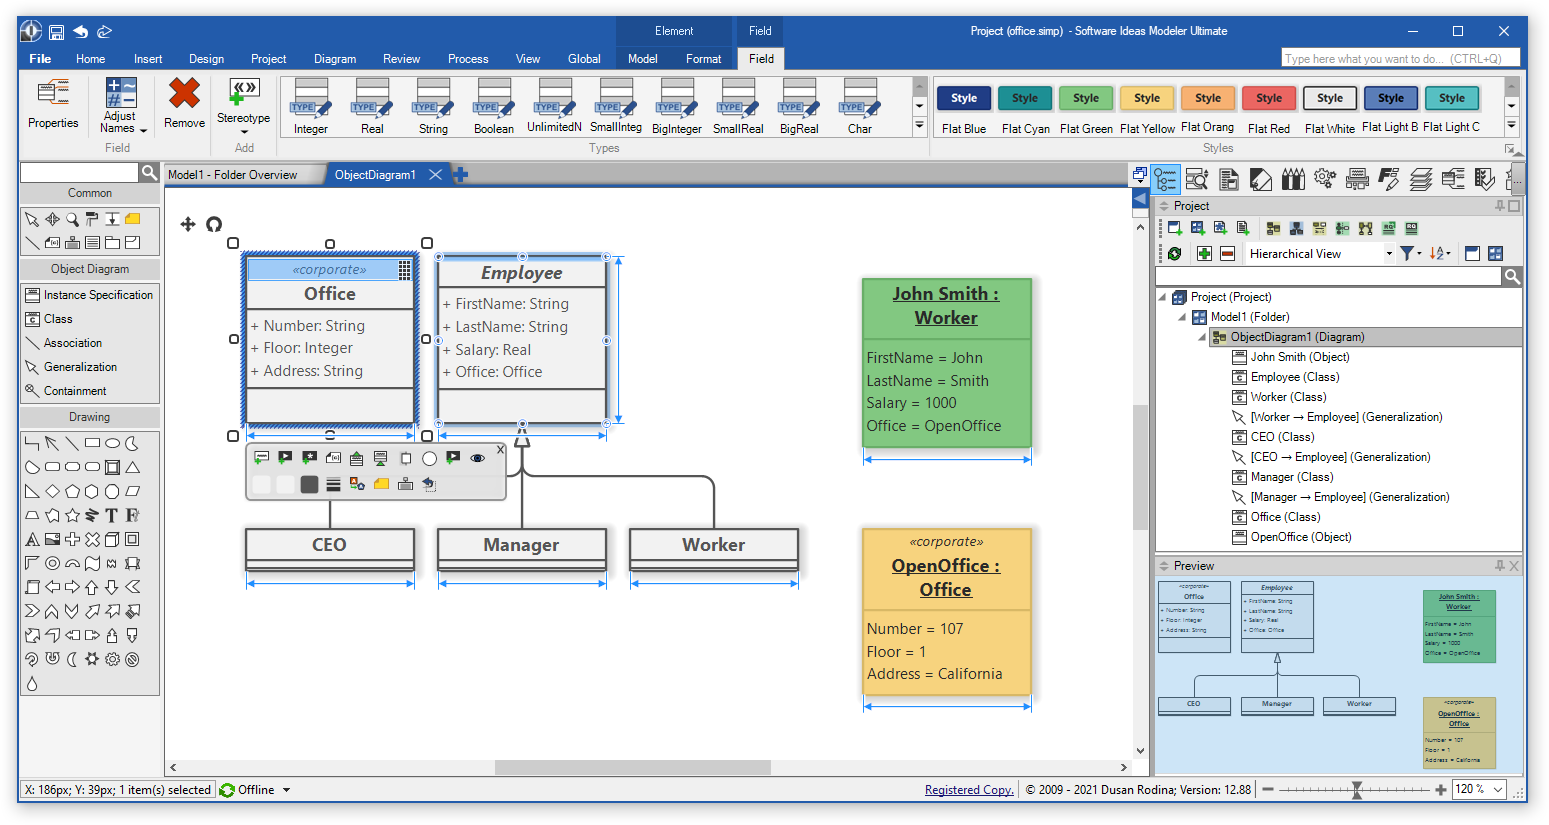 Diagram Editor - Software Ideas Modeler 12.88